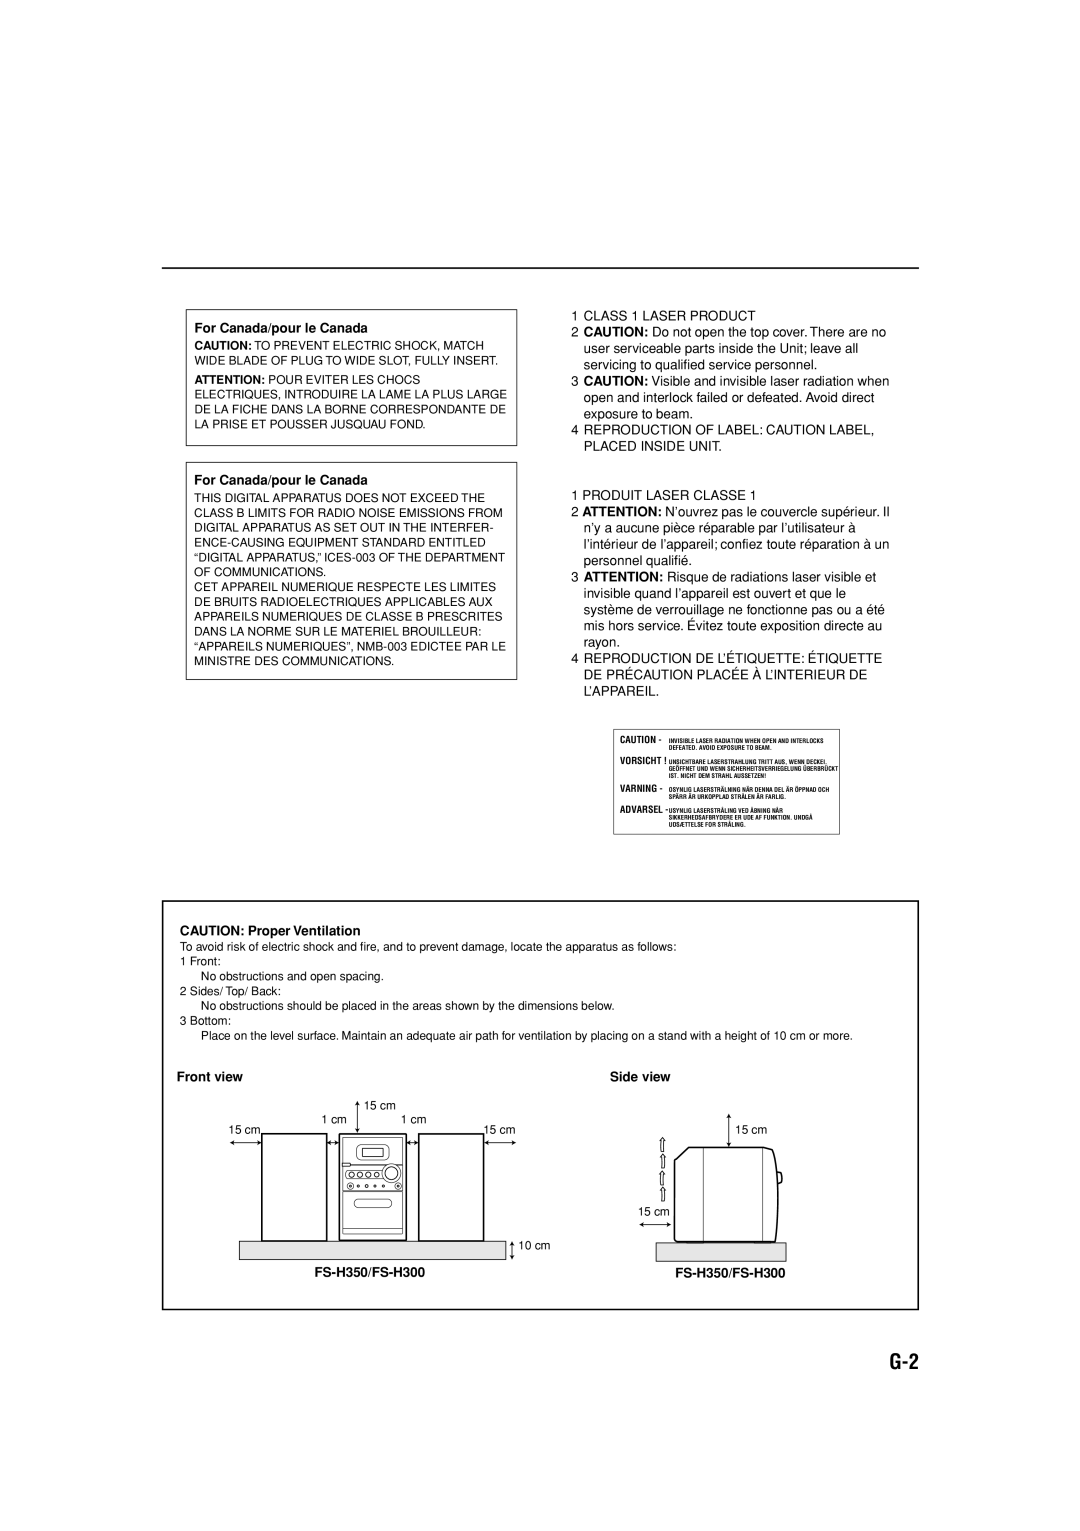 JVC manual For Canada/pour le Canada, CAUTION Proper Ventilation, Front view, Side view, FS-H350/FS-H300 